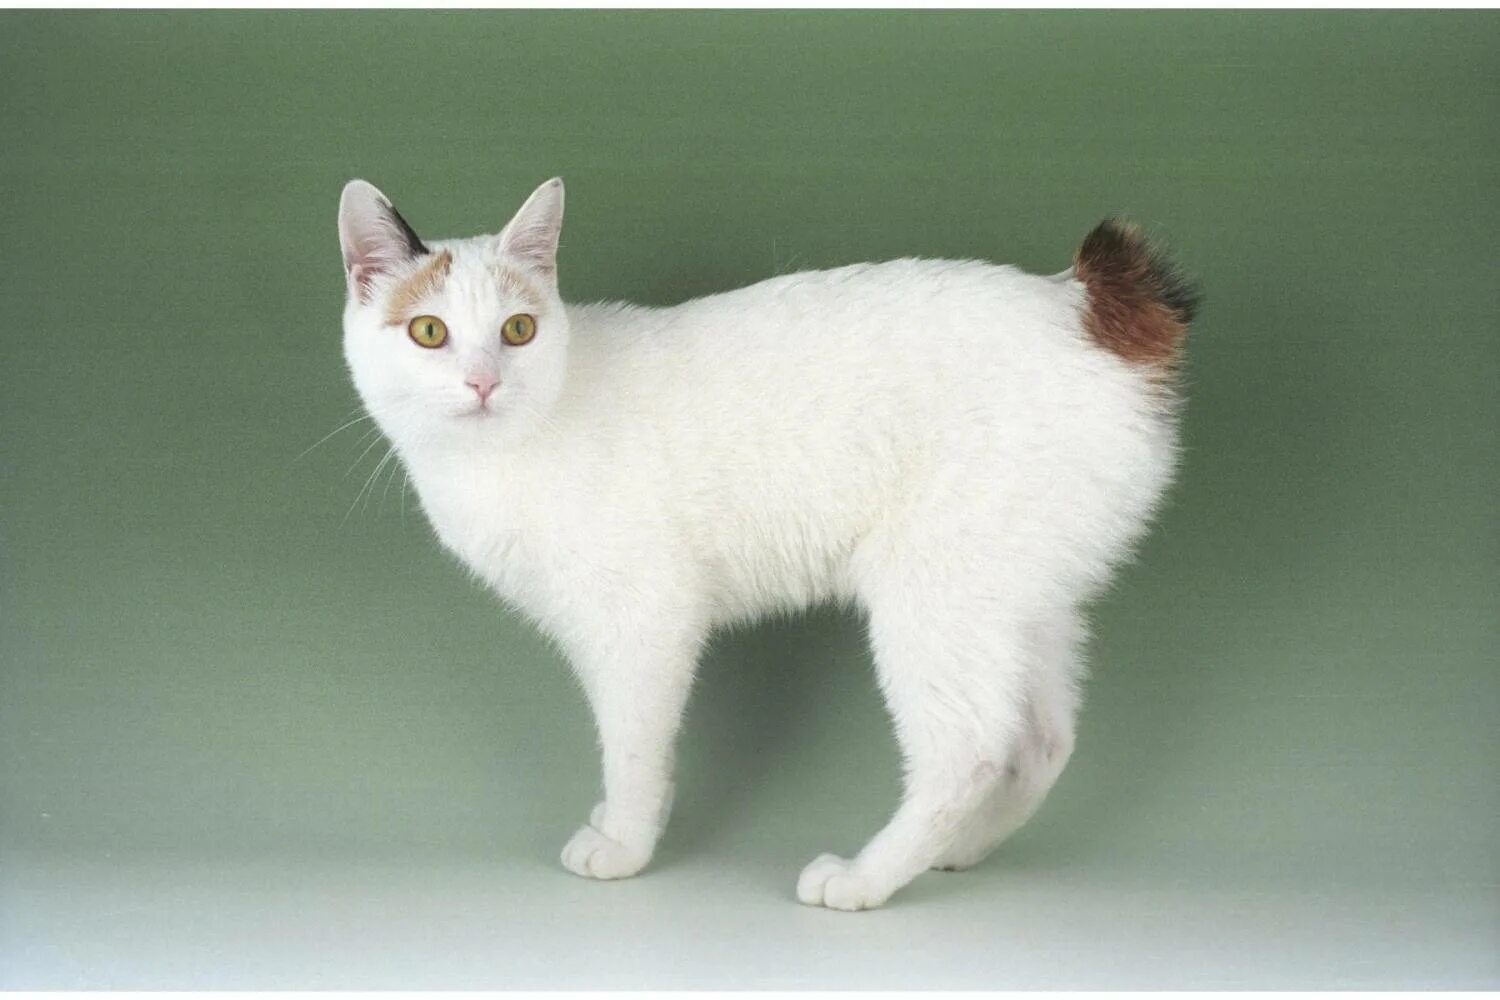 Порода кошек серо белого окраса. Кот японский бобтейл. Японский бобтейл длинношёрстный. Японский бобтейл короткошёрстный. Порода кошек японский бобтейл.